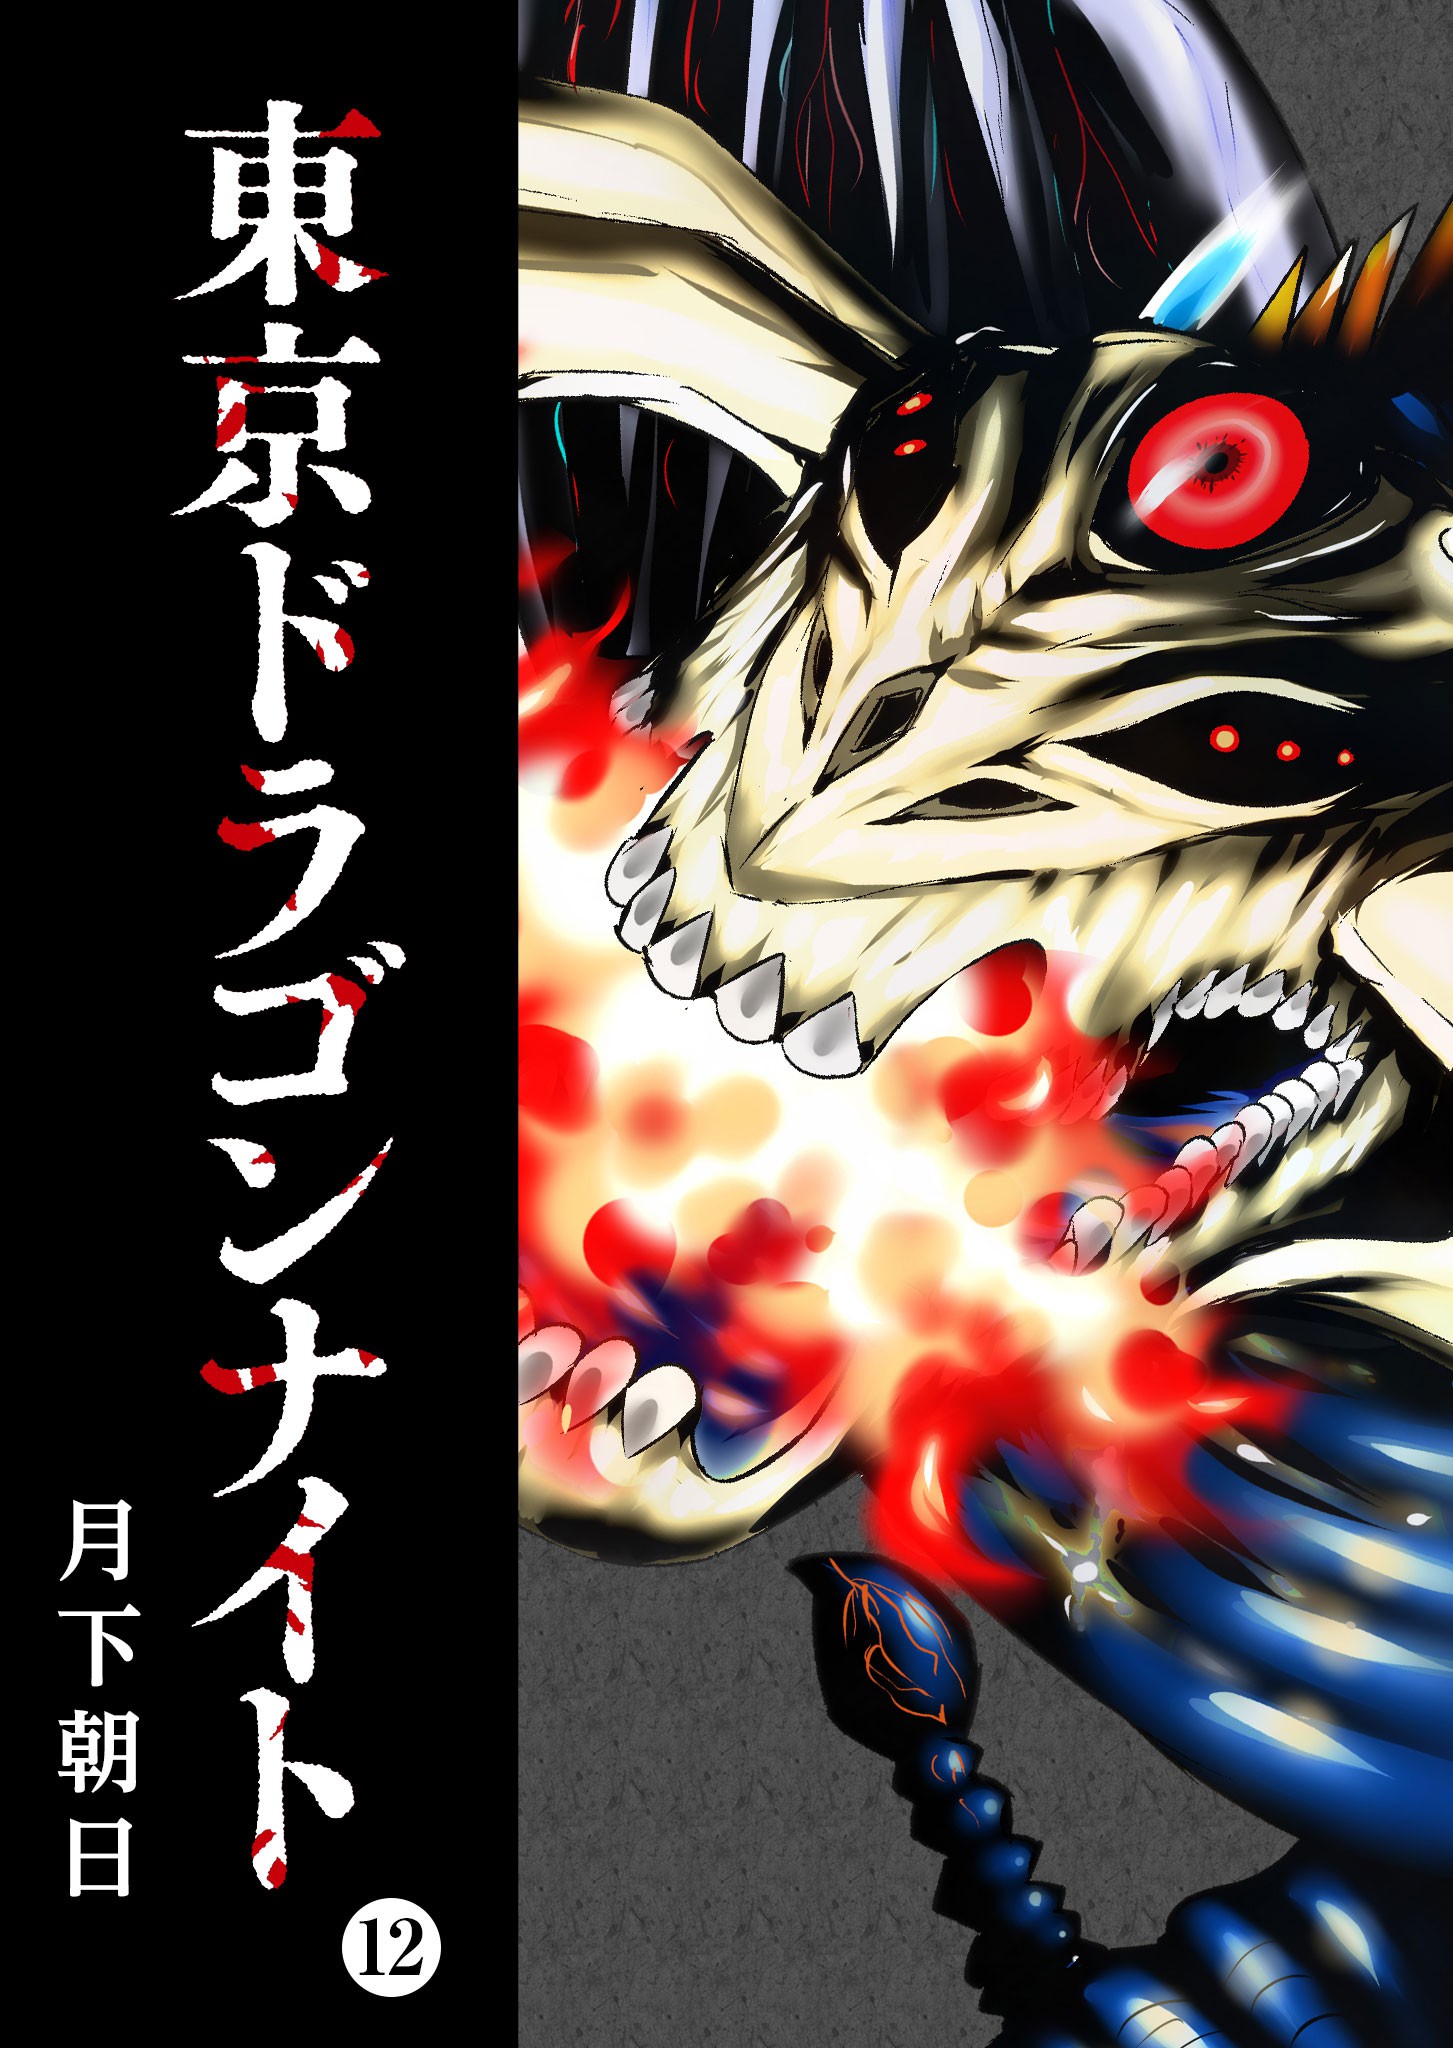 Read Tokyo Ghoul online on MangaDex